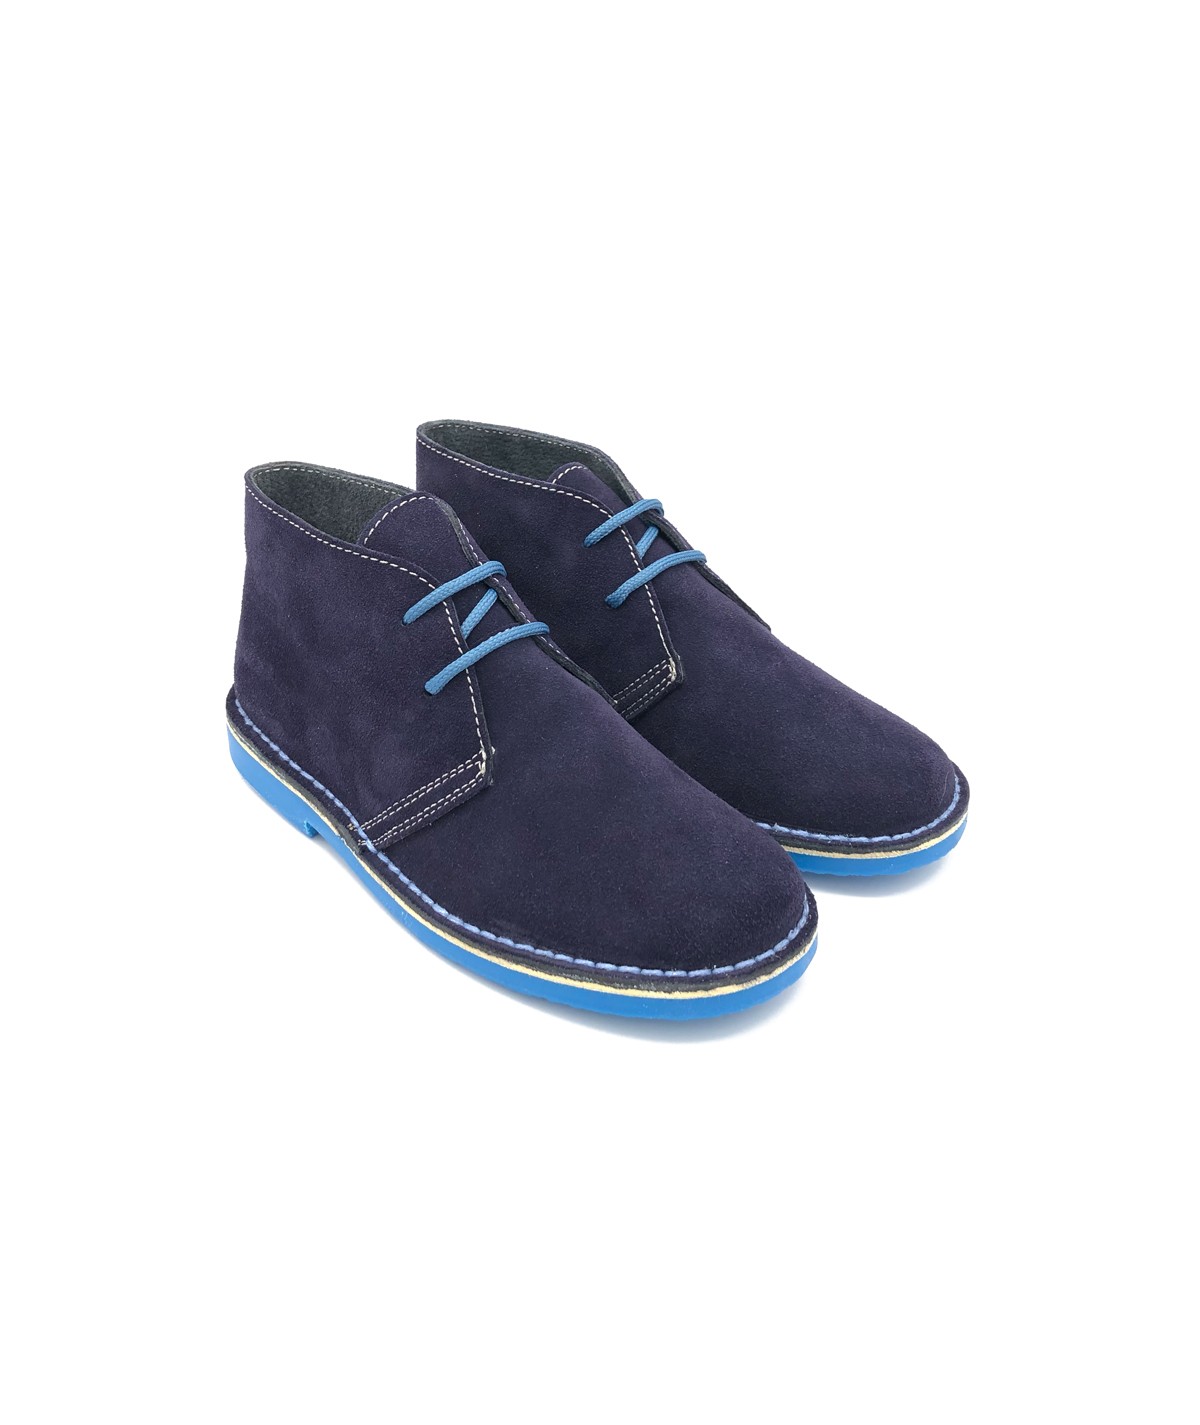 Bicolor boots for men in navy blue & light blue